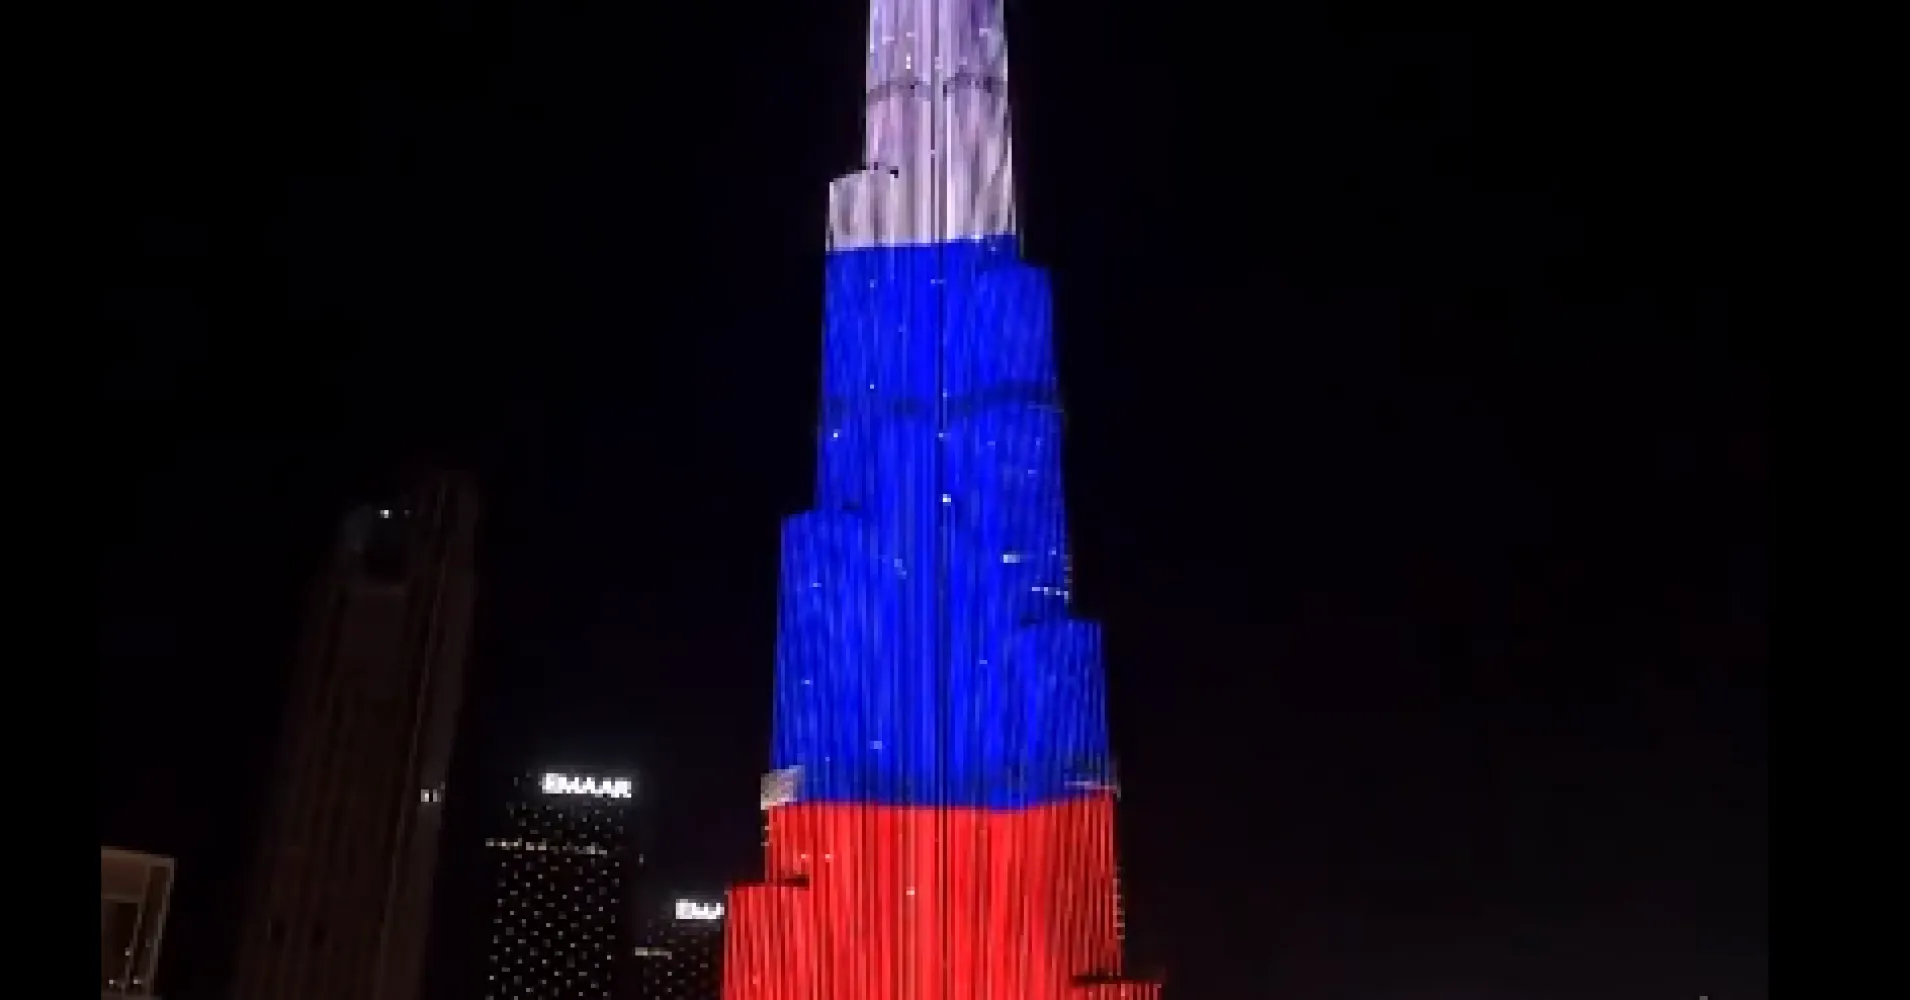 Бурдж халифа триколор. Небоскрёб Бурдж-Халифа в Дубае. Бурдж Халифа окрашенное здание. Бурдж Халифа в цветах российского флага. Здание выше Бурдж Халифа в Дубае.